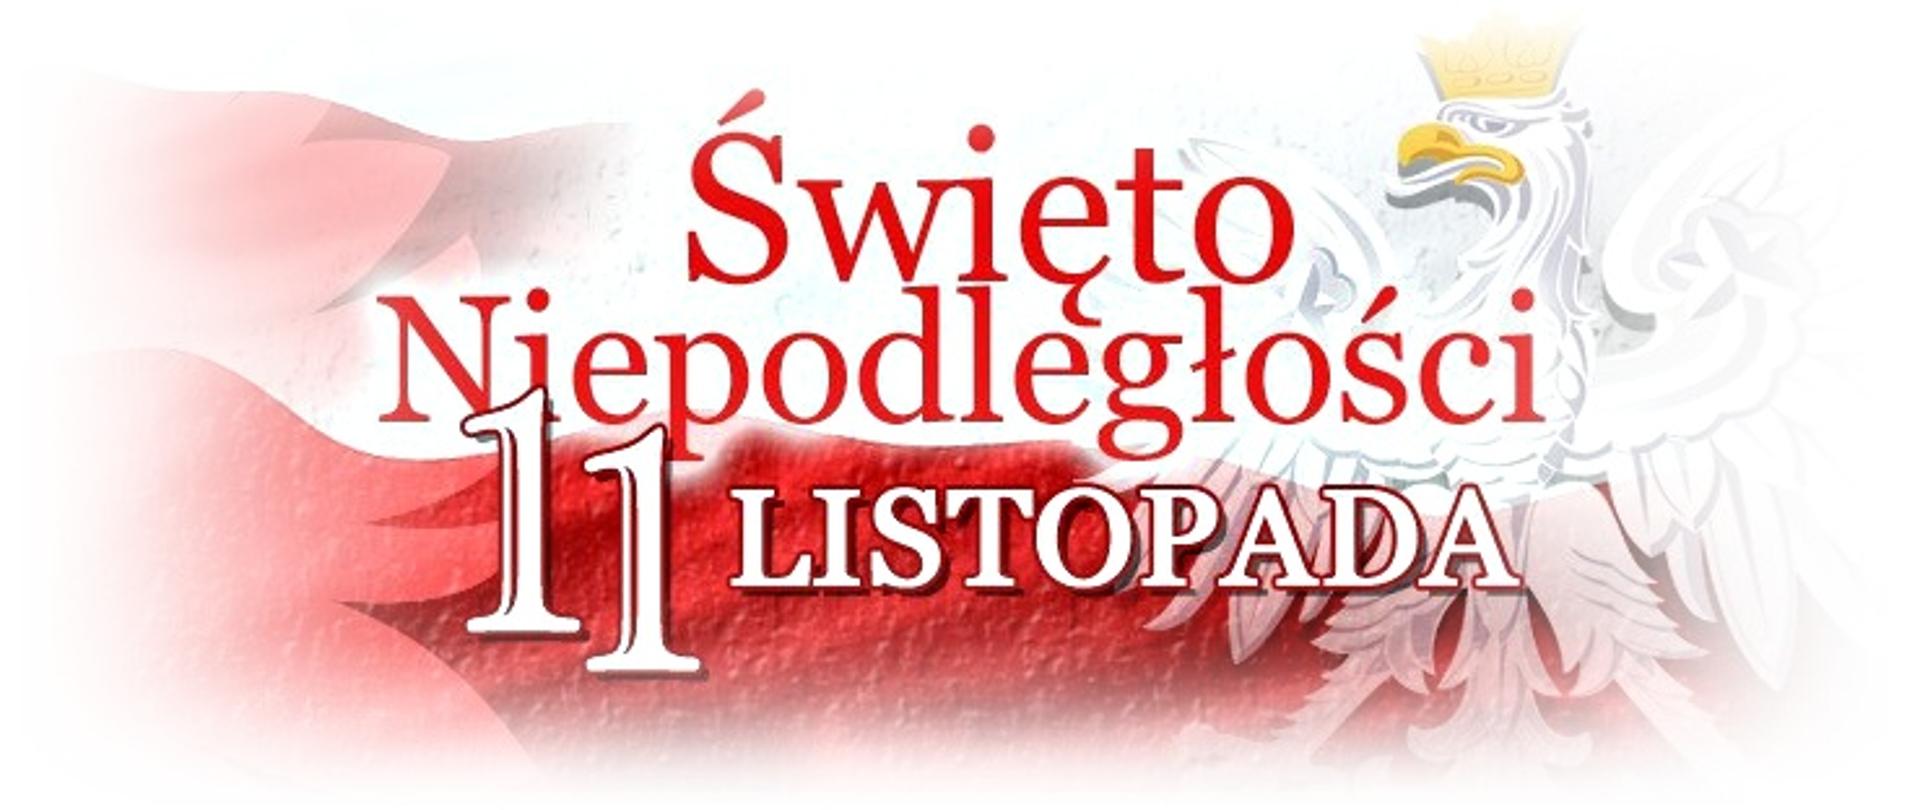 czerwono białe litery na czerwono białym tle z prawej strony biały orzeł w złotej koronie. Napis Święto Niepodległości 11 listopada